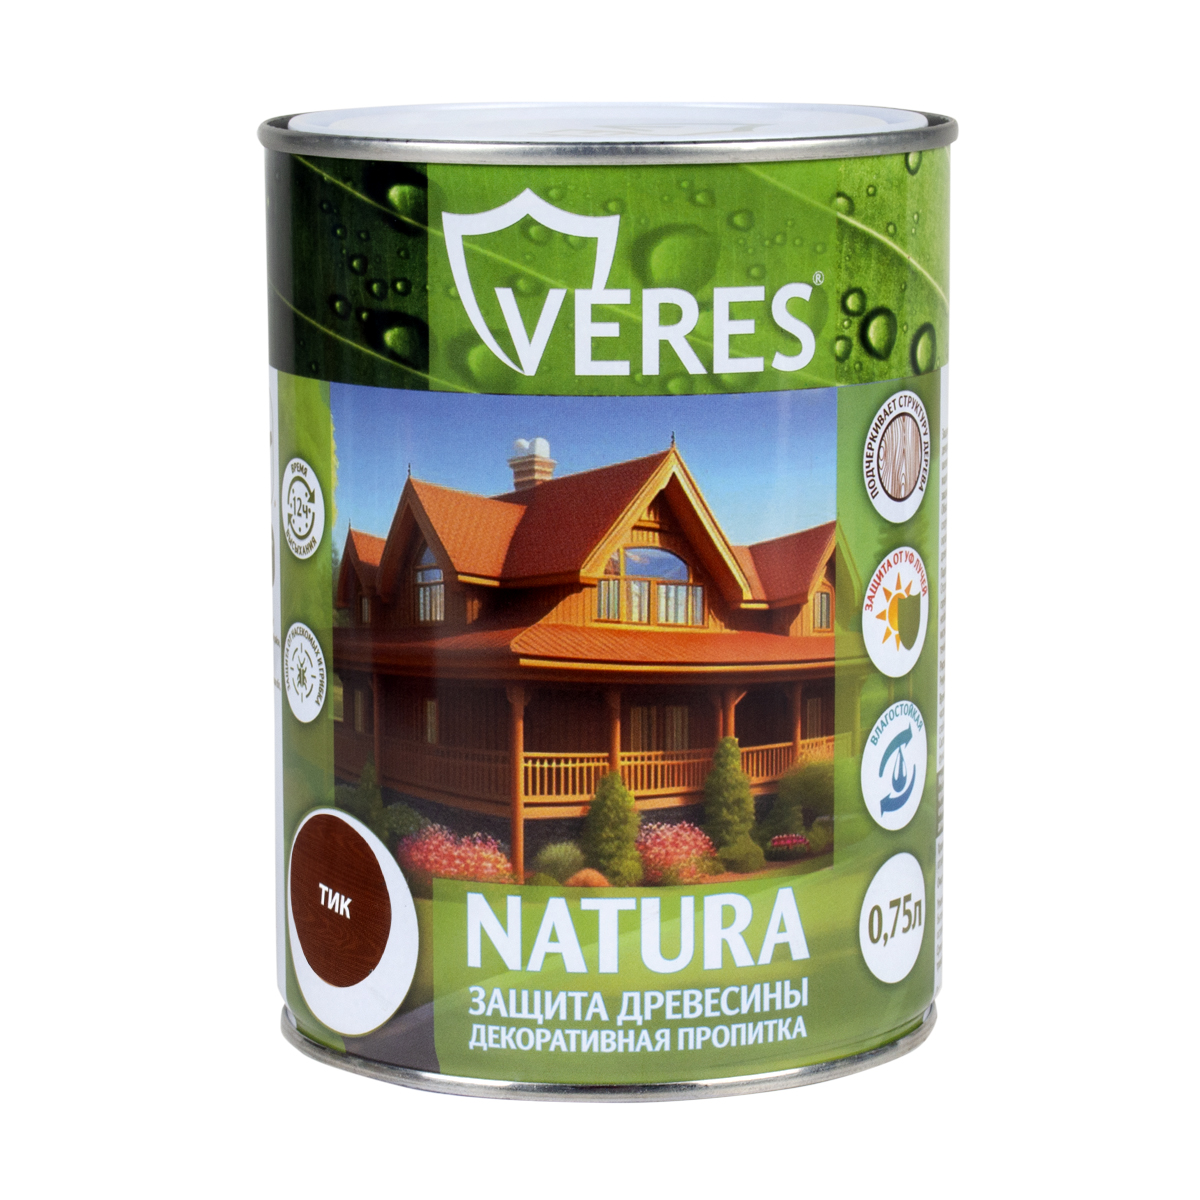 Декоративная пропитка для дерева Veres Natura полуматовая 0 75 л тик, VR-128 пропитка veres